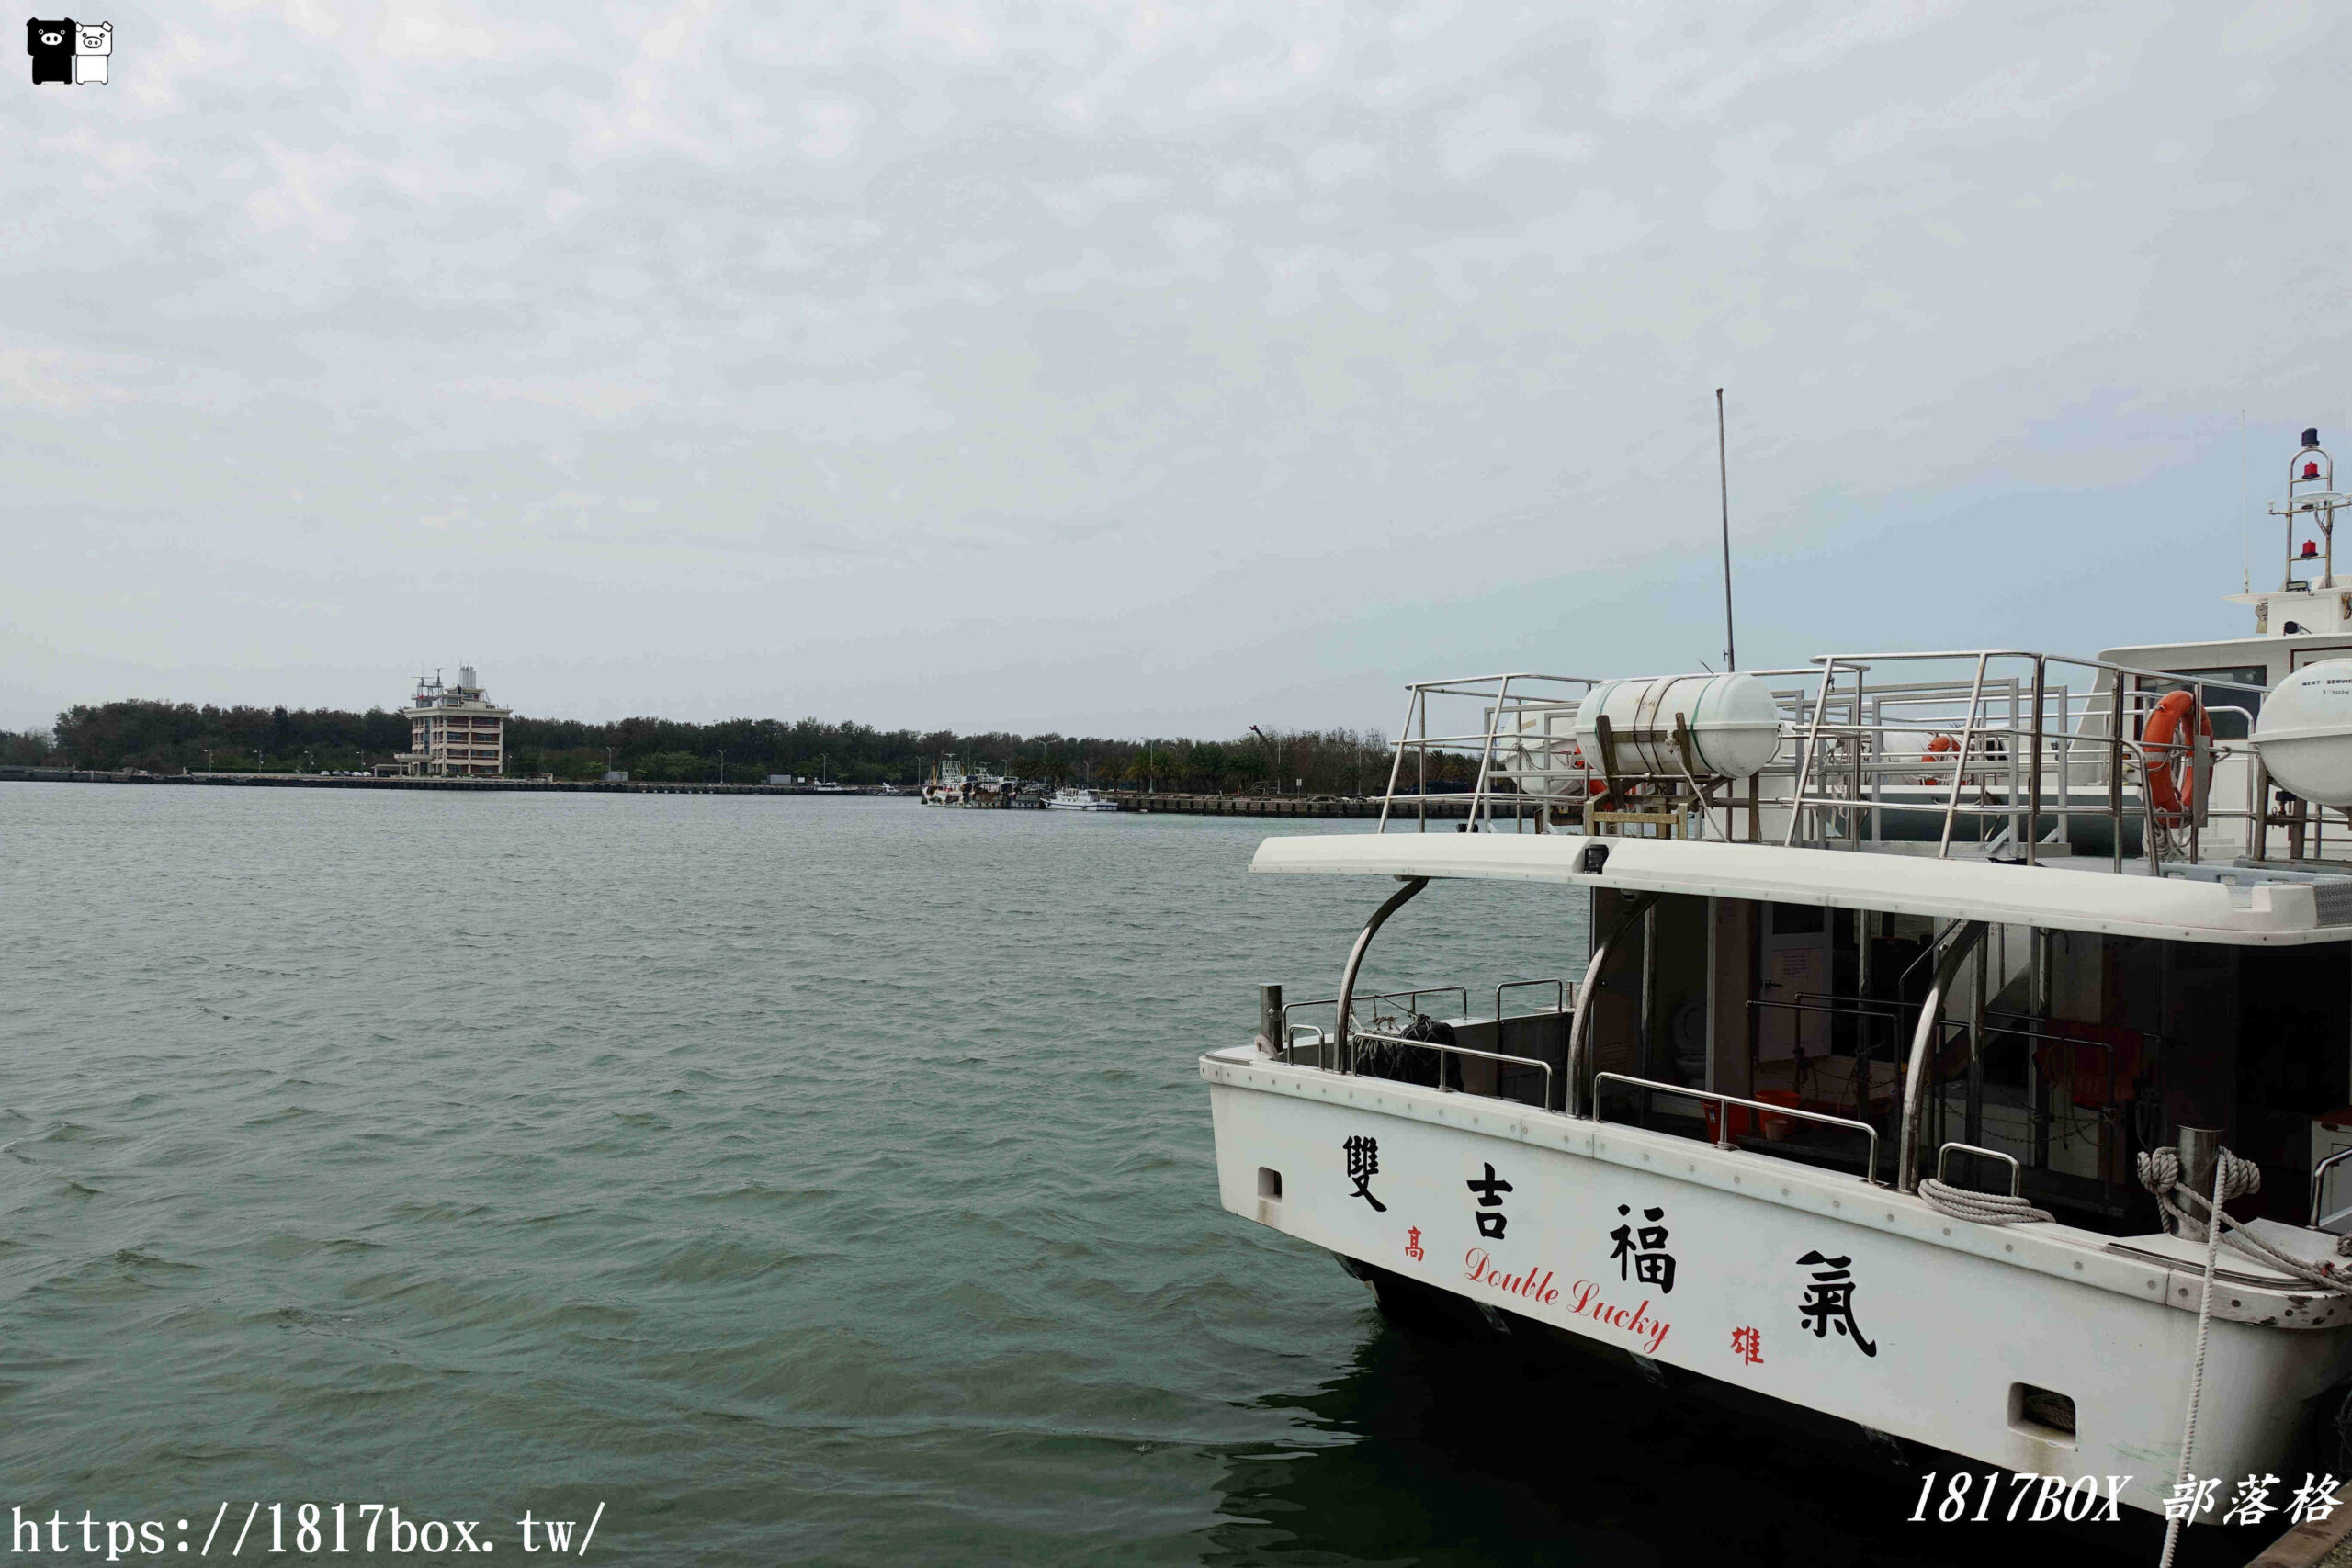 【台南。將軍】將軍漁港。台南最大漁港。漁貨拍賣市場。感受魚市叫賣氣氛